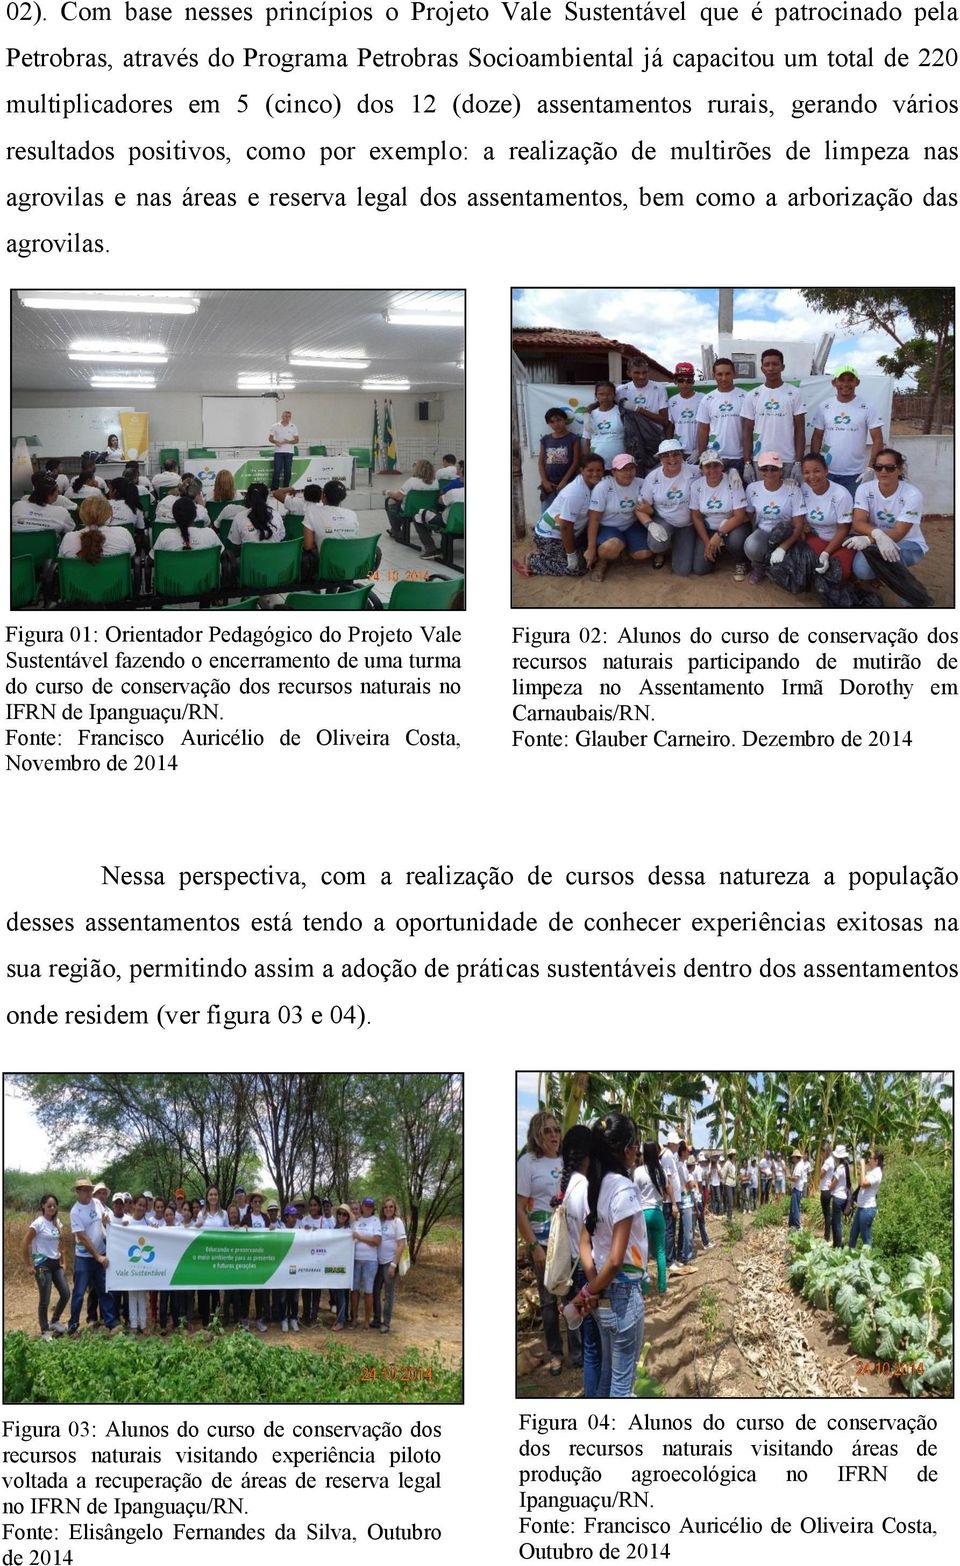 arborização das agrovilas. Figura 01: Orientador Pedagógico do Projeto Vale Sustentável fazendo o encerramento de uma turma do curso de conservação dos recursos naturais no IFRN de Ipanguaçu/RN.